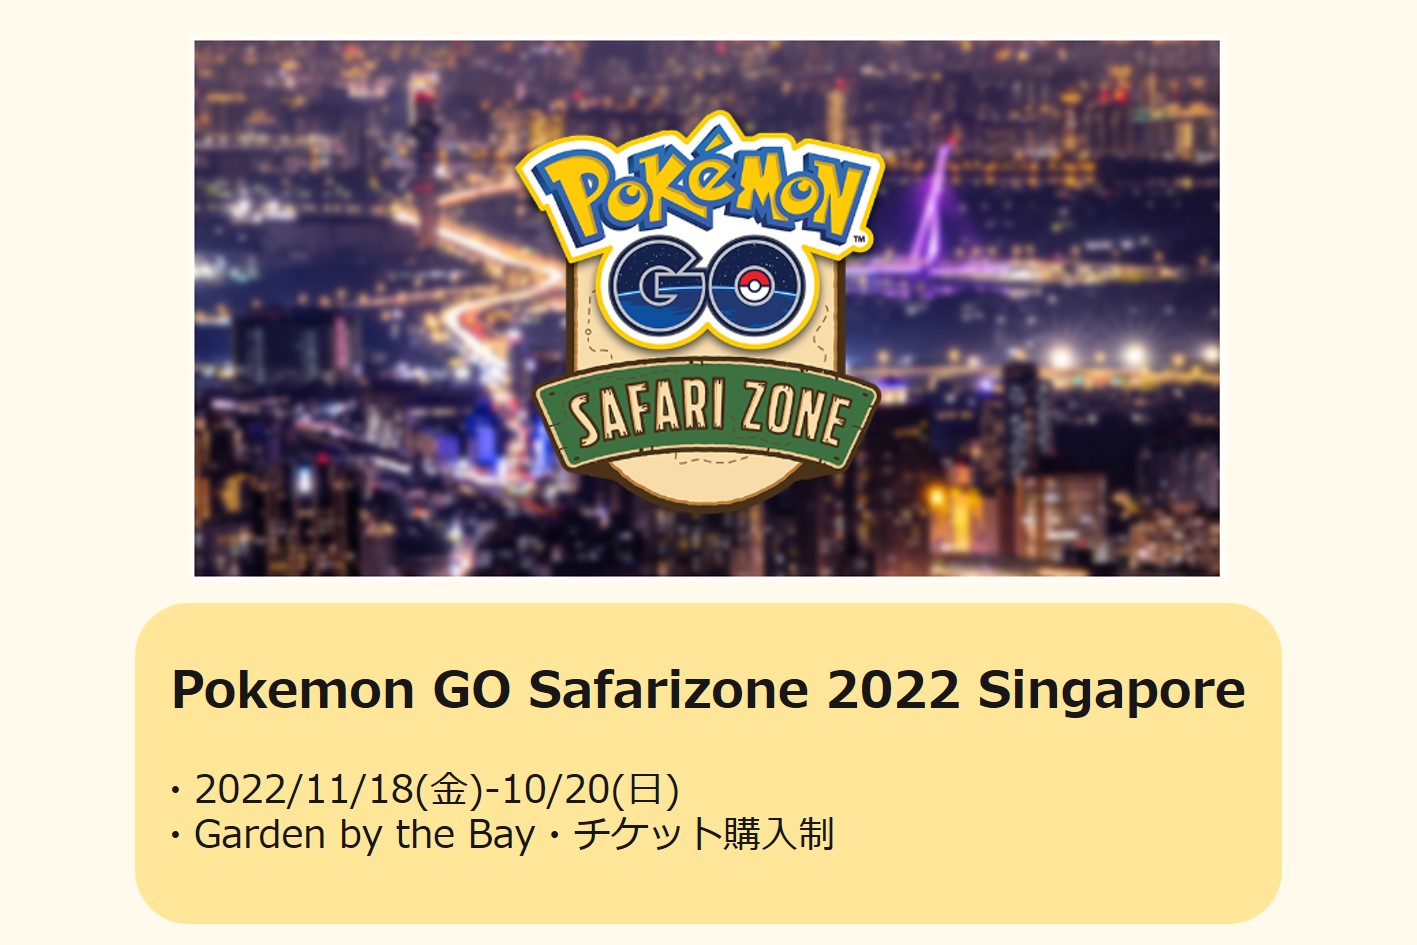 ポケモンgo 11月にシンガポールでもpokemon Go Safari Zone 22が開催されるらしい 今日もどこかに旅したい